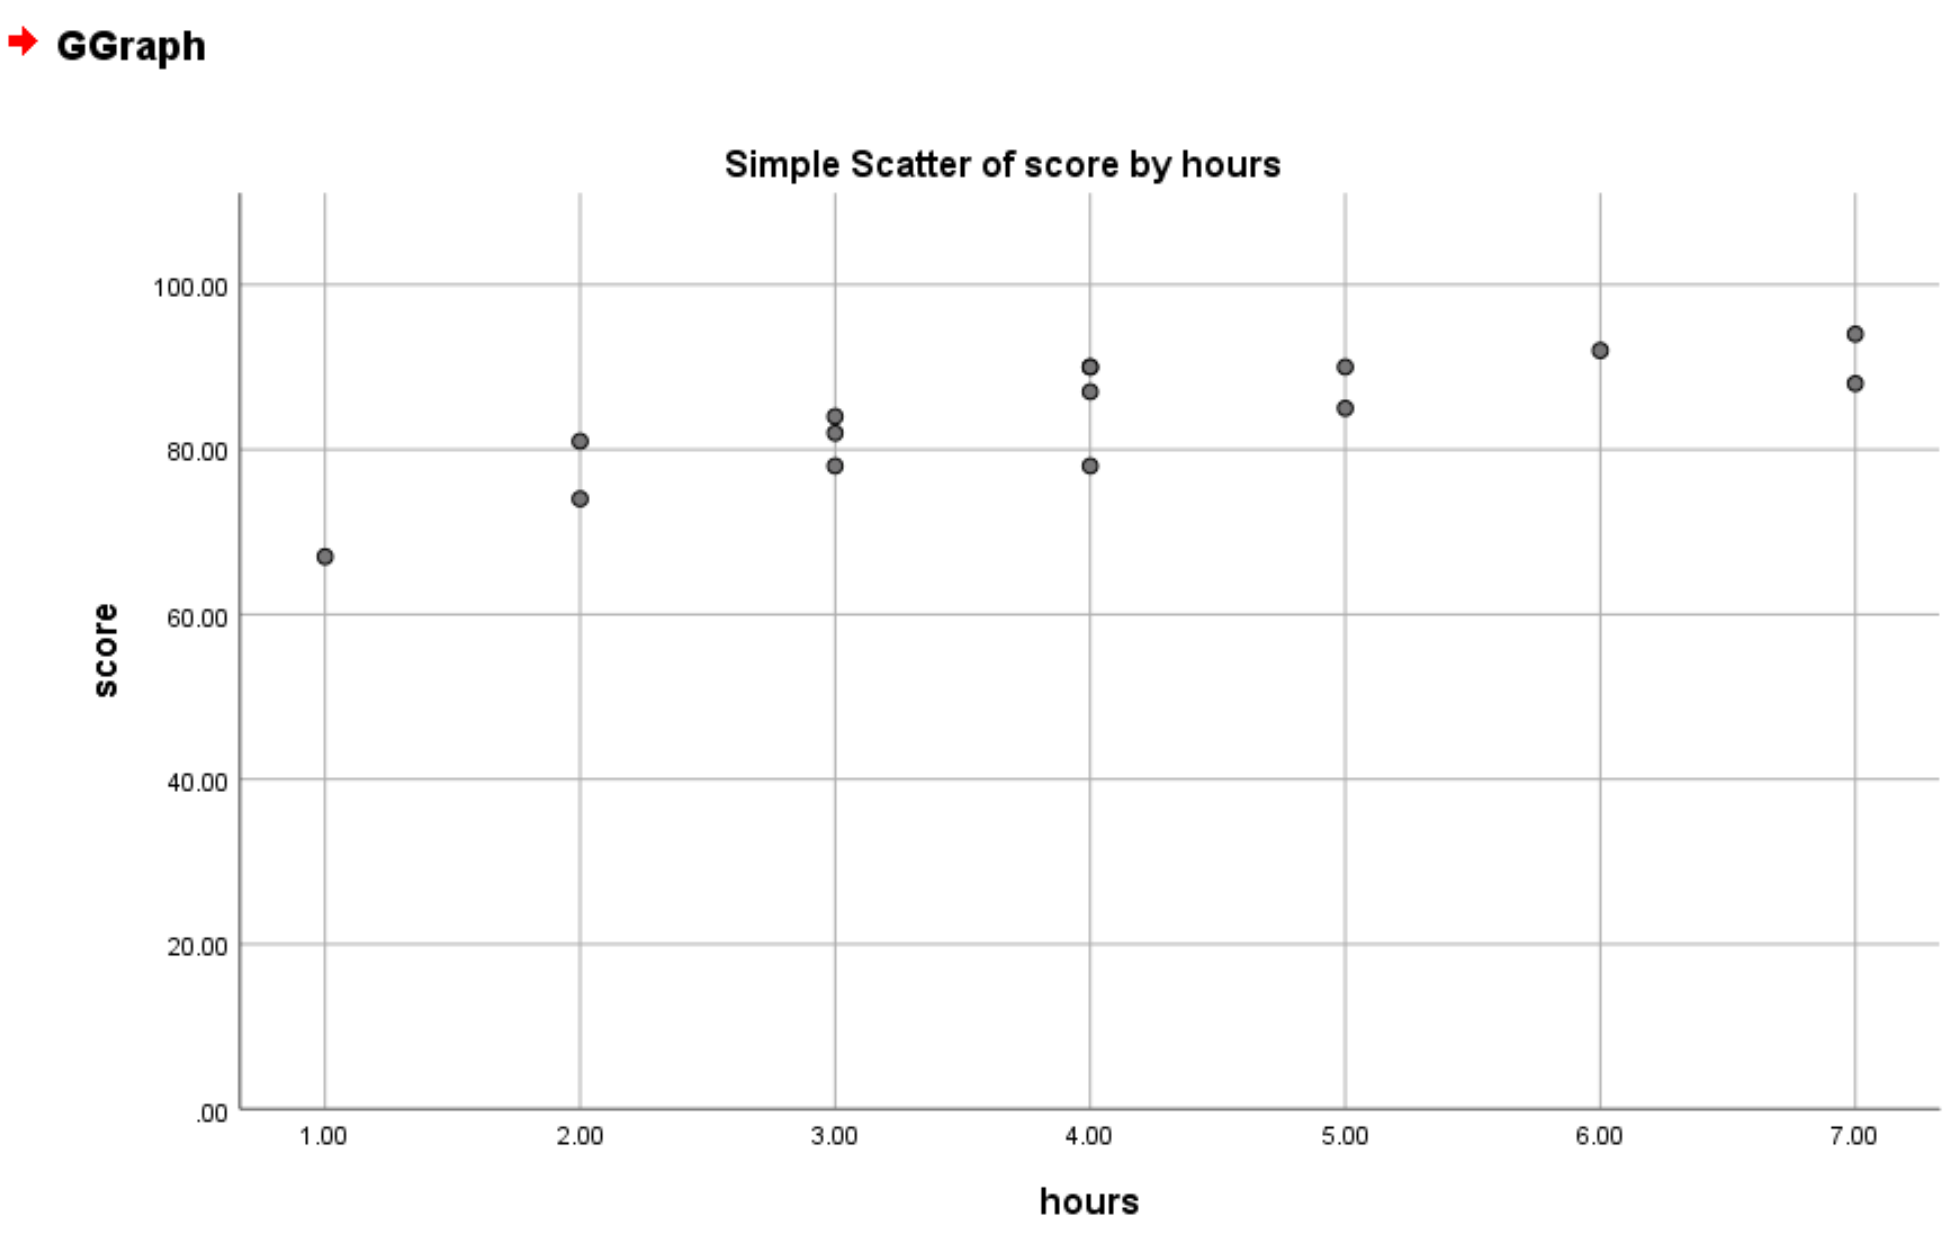 Grafico a dispersione in SPSS con un valore minimo pari a zero sull'asse y